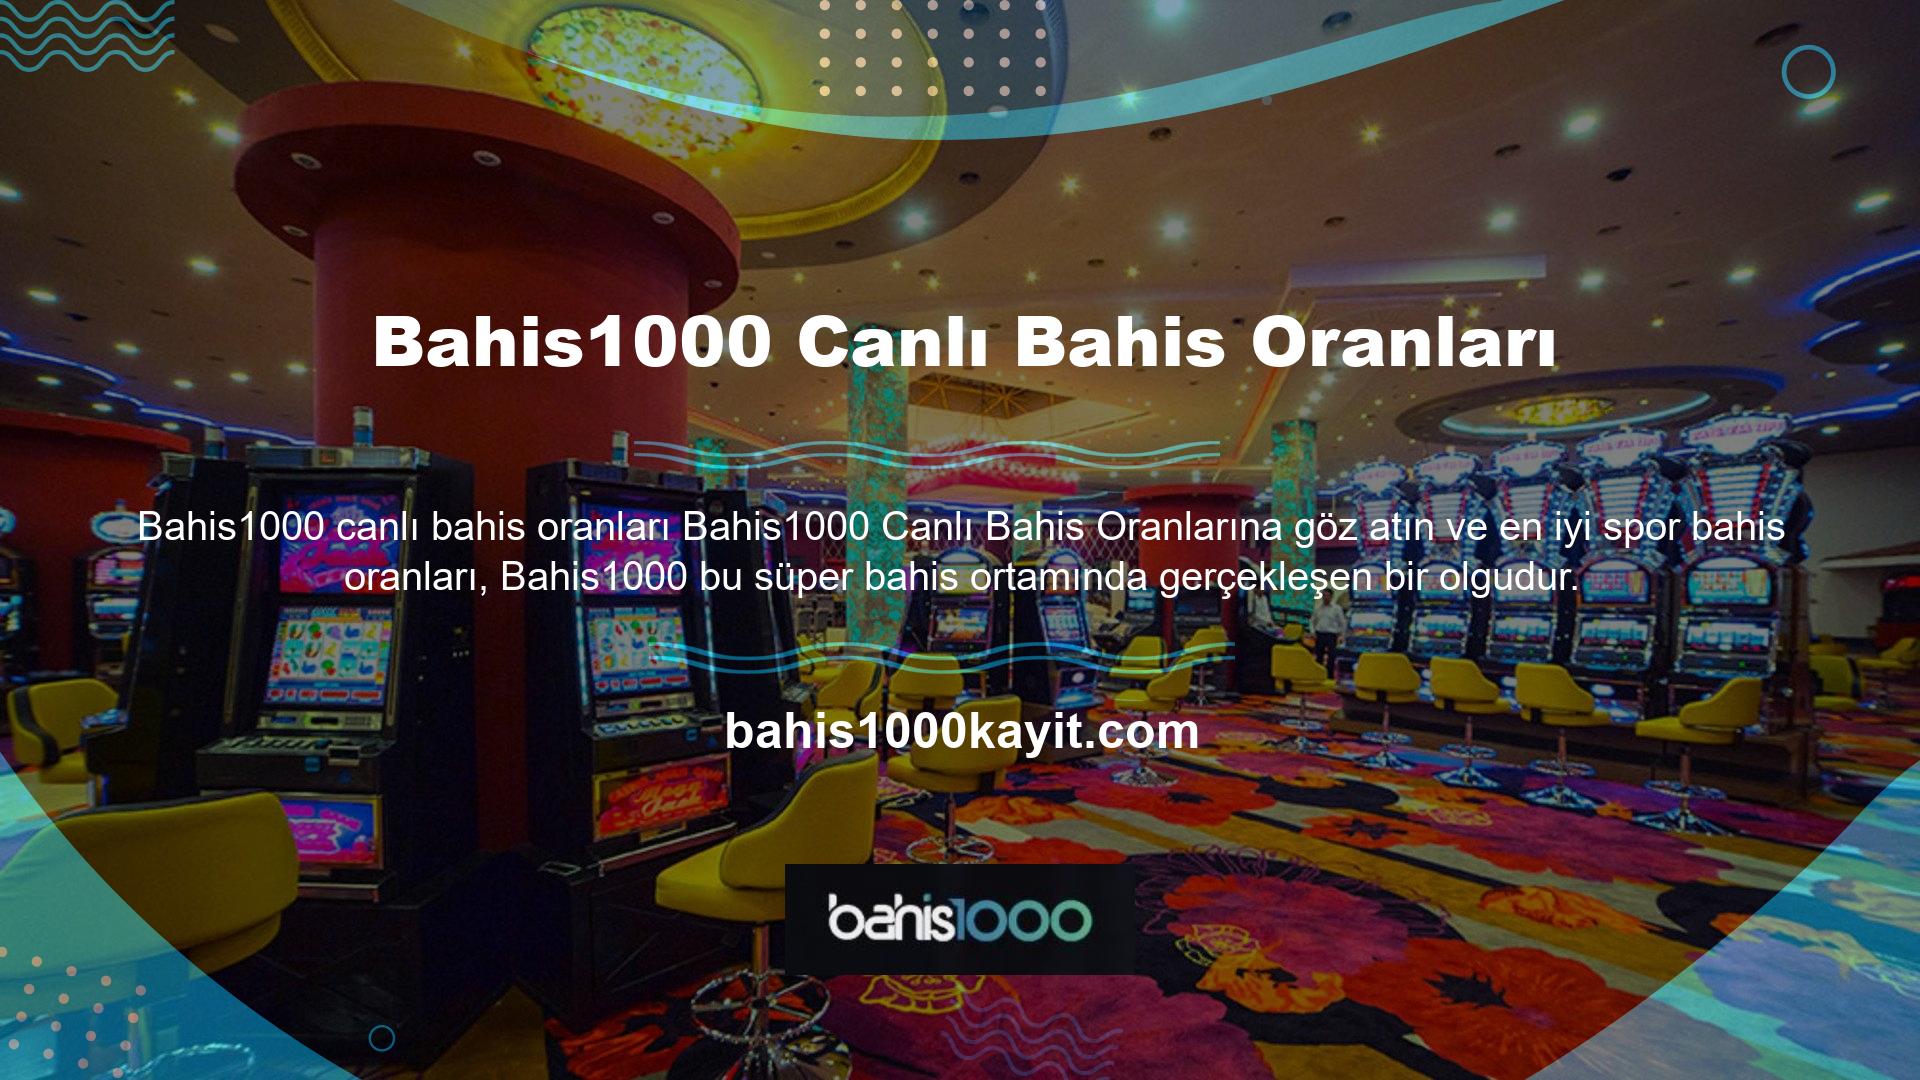 Bahis1000, tüm dünyada çok önemli bir yasa dışı casino sitesidir